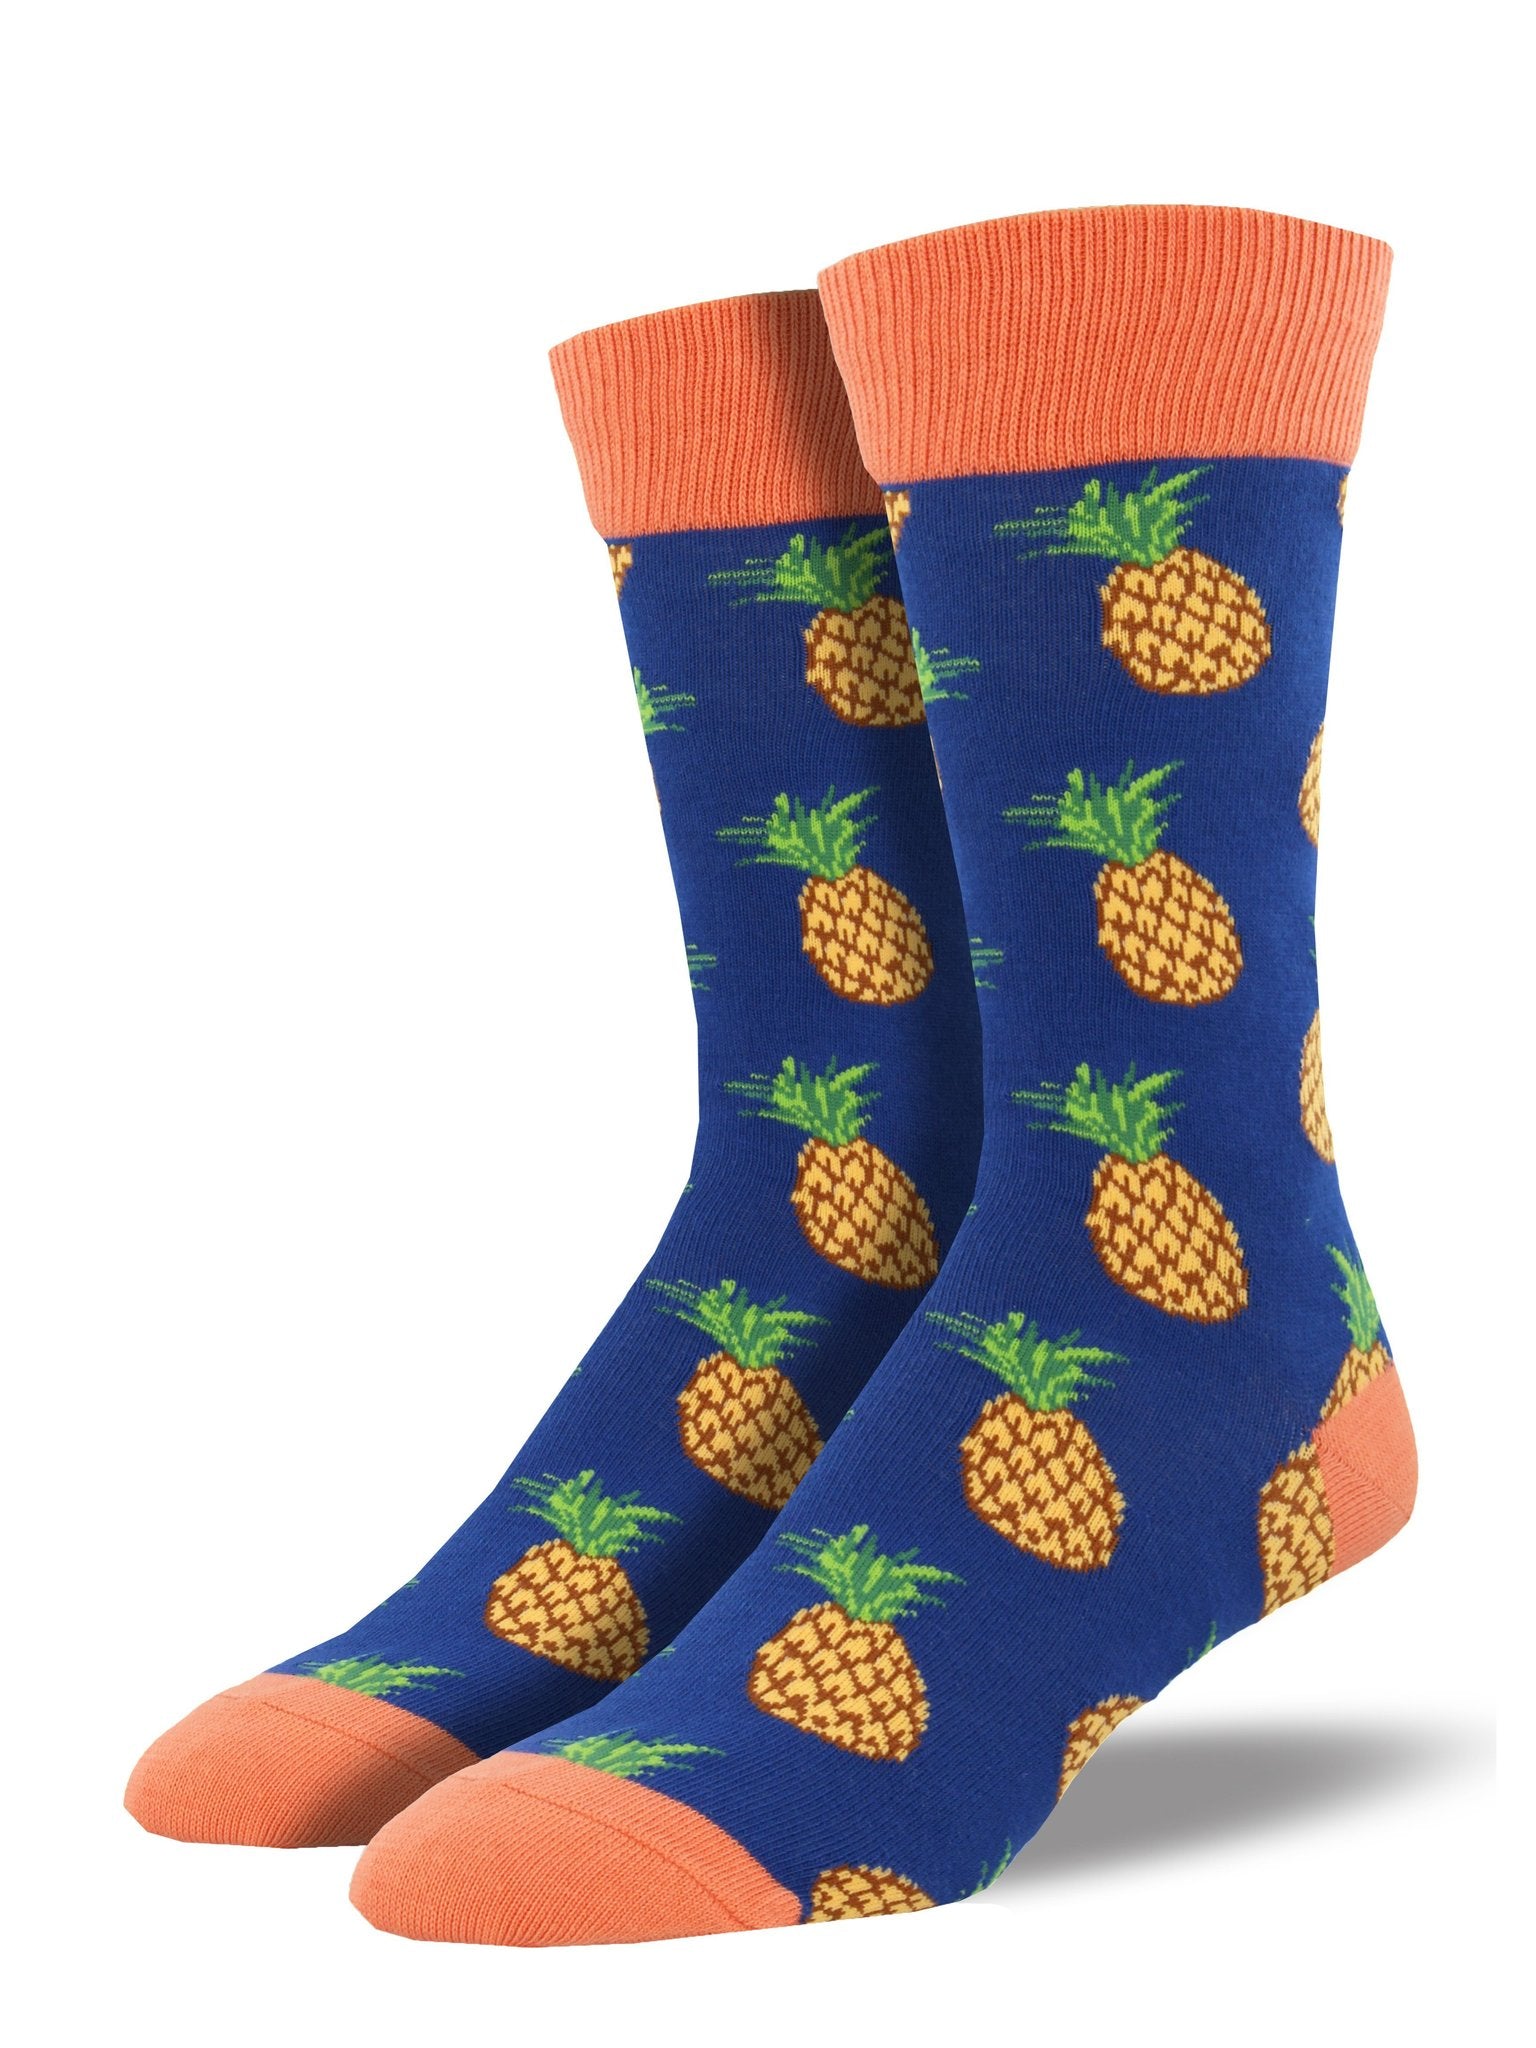 Many Pineapples Men's Socks